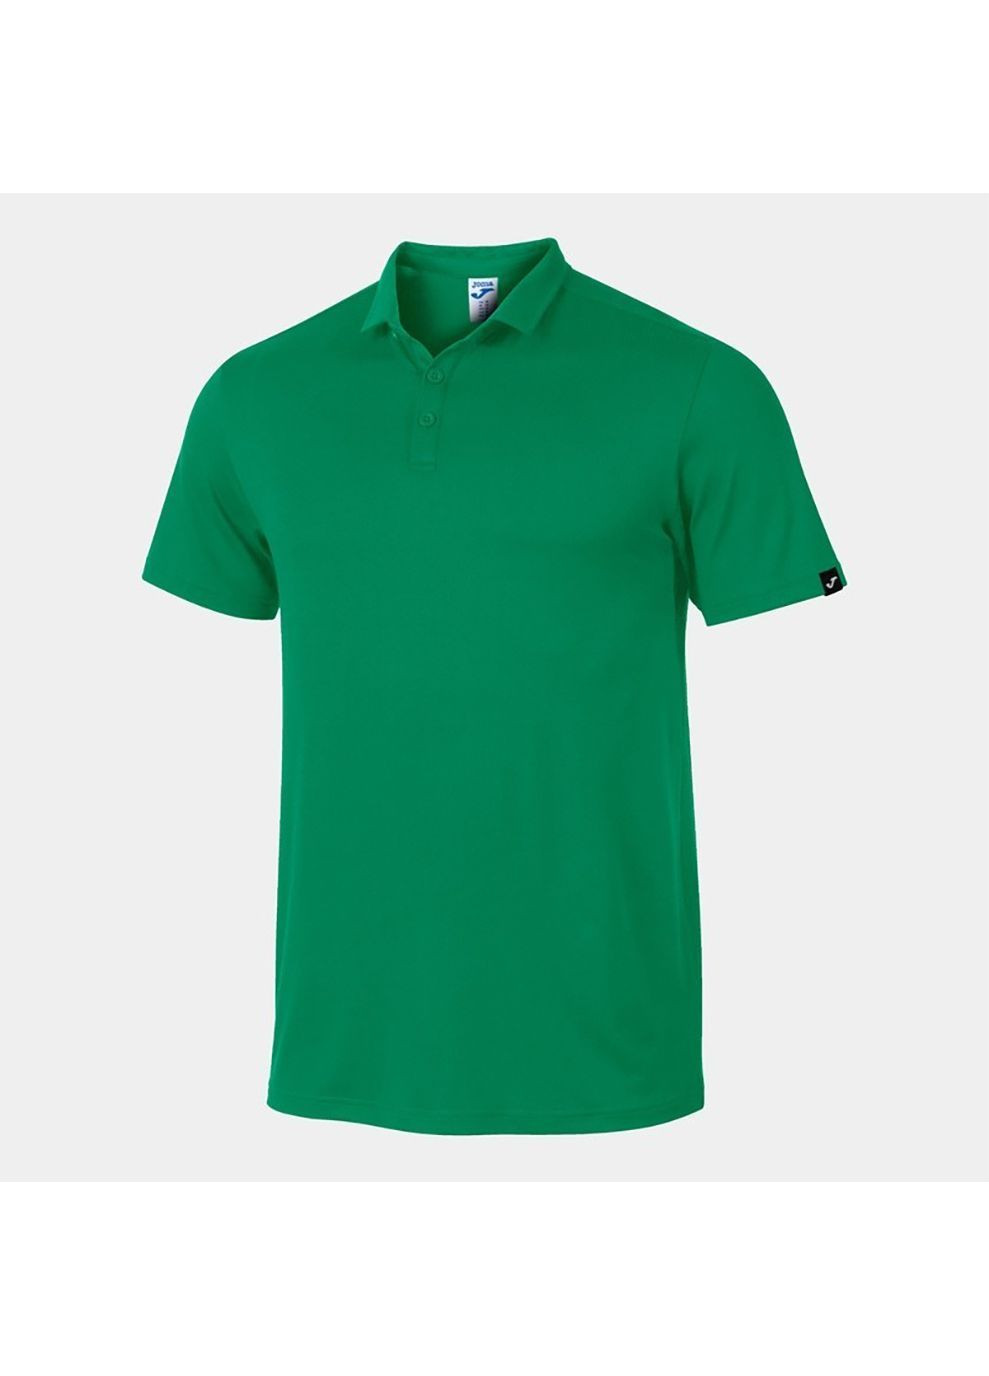 Зеленая женская футболка-поло sydney зеленый Joma однотонная